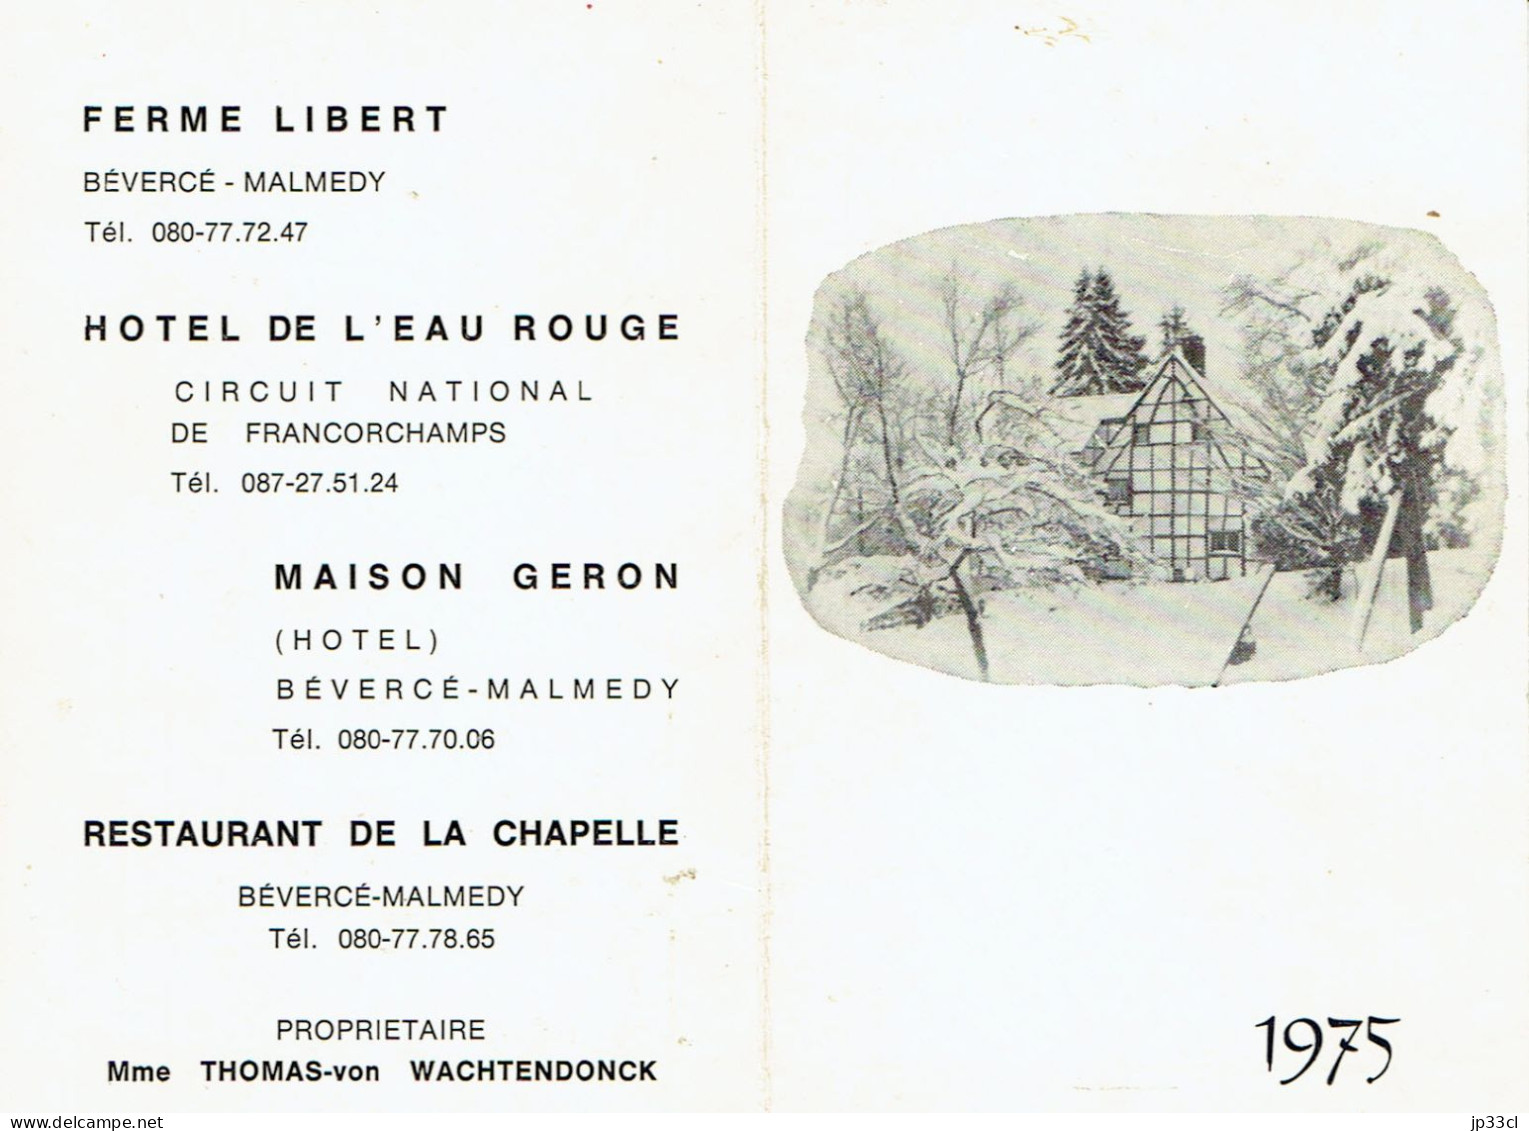 Calendrier 1975 Ferme Libert, Hôtel De L'Eau Rouge (Francorchamps), Maison Geron, Etc. Bevercée-Malmedy - Small : 1971-80